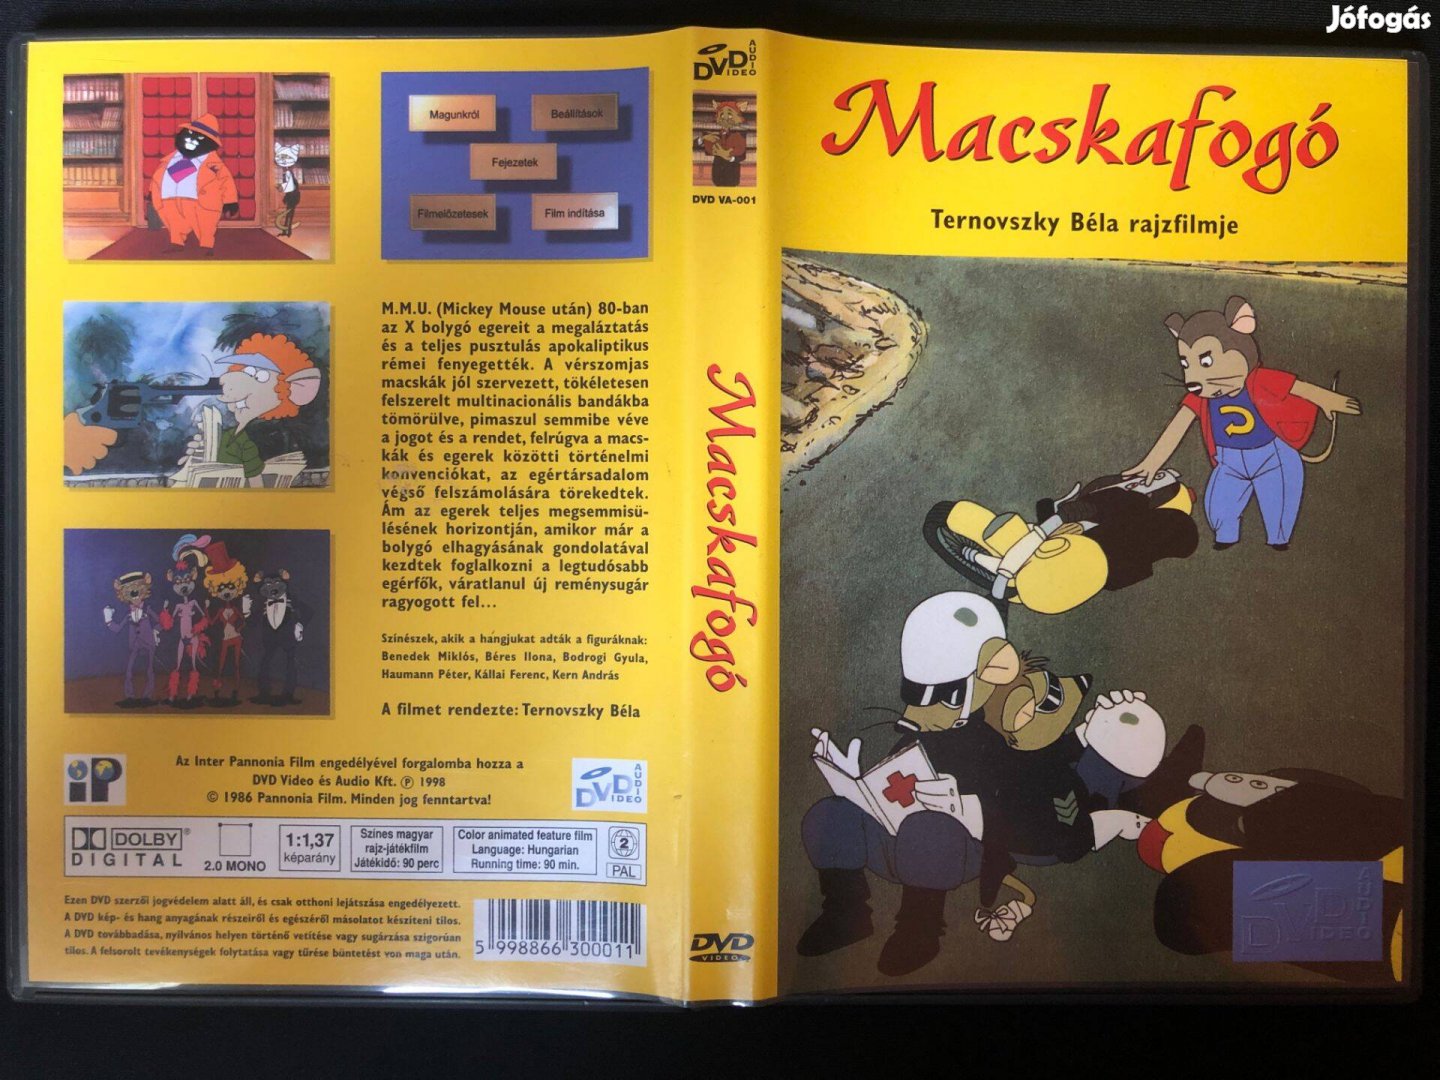 Macskafogó DVD (ritkaság, eredeti felújítatlan változat)